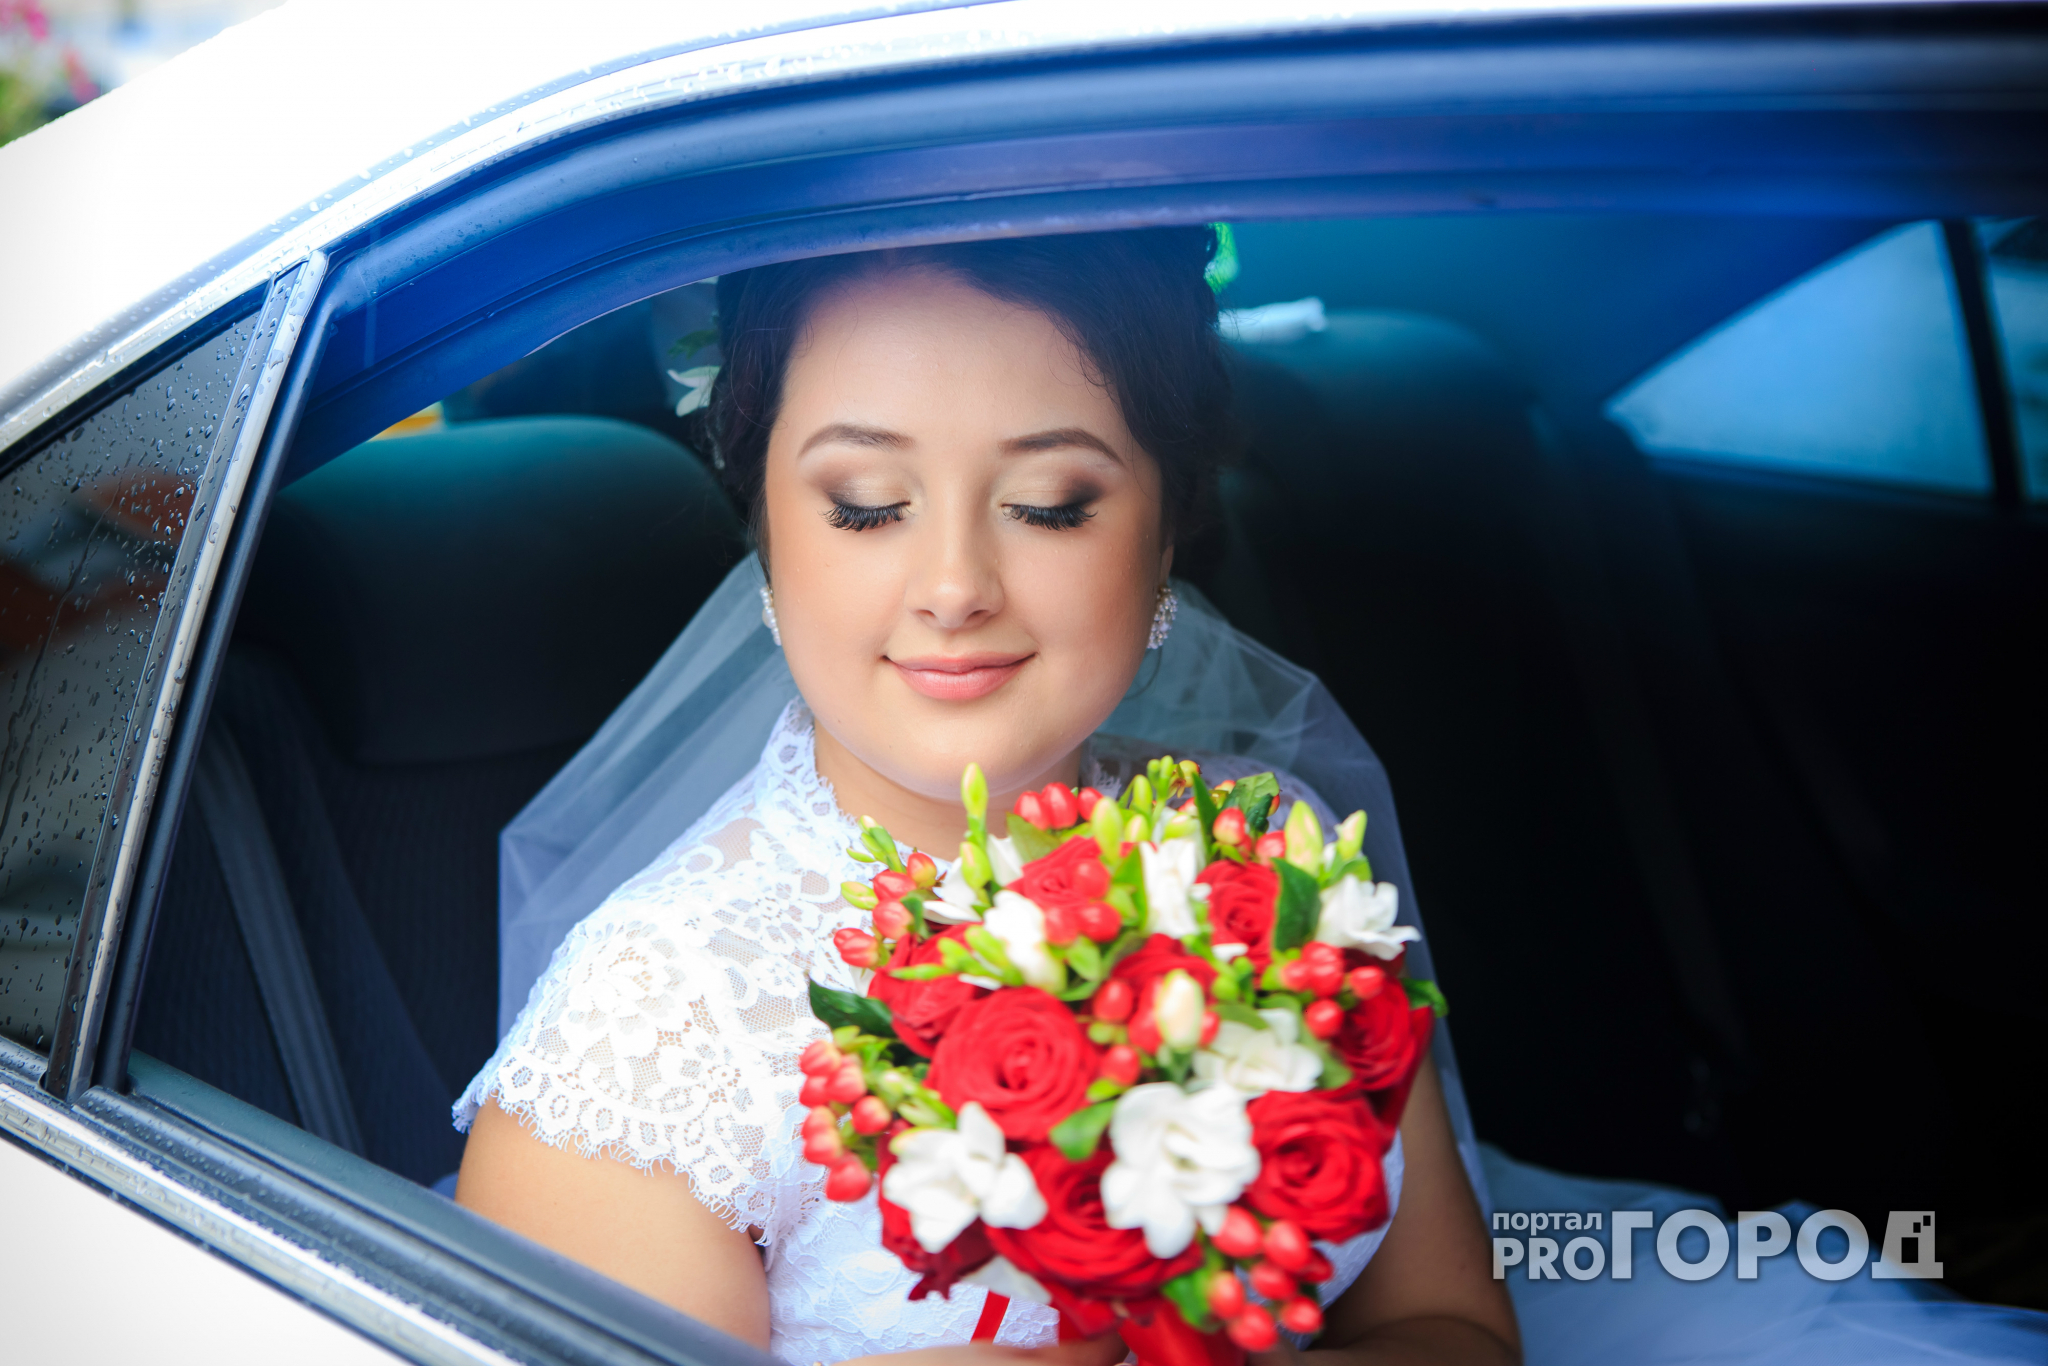 Красивая невеста 2020 азербайджанка. Невеста на кладочке, девушки Азии.